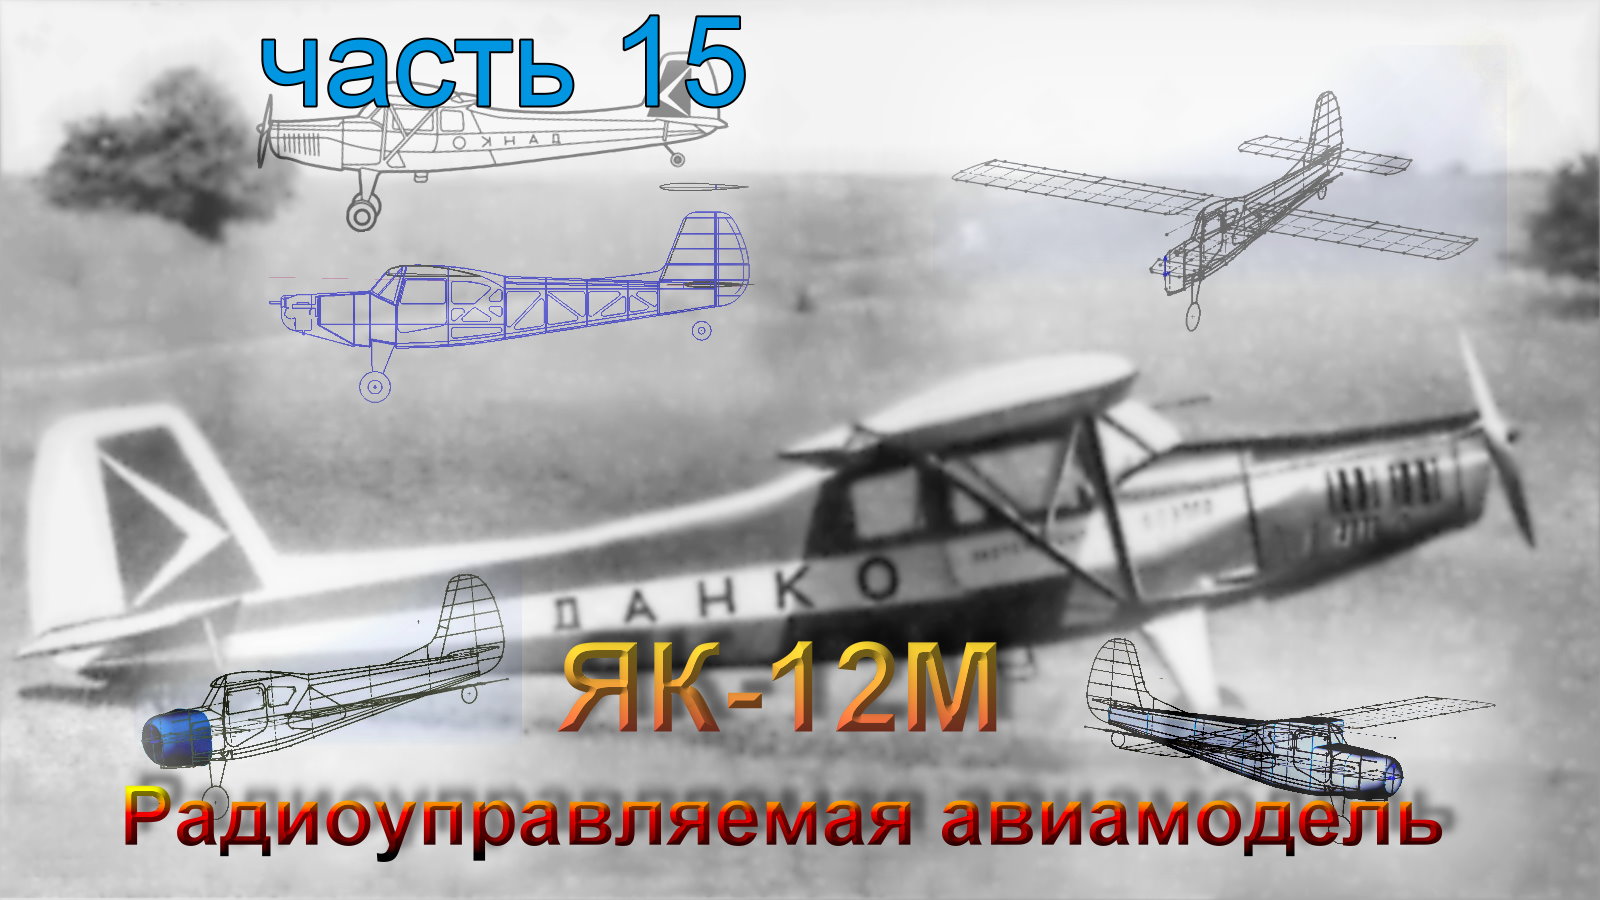 Радиоуправляемая модель самолета ЯК-12М (часть 15)